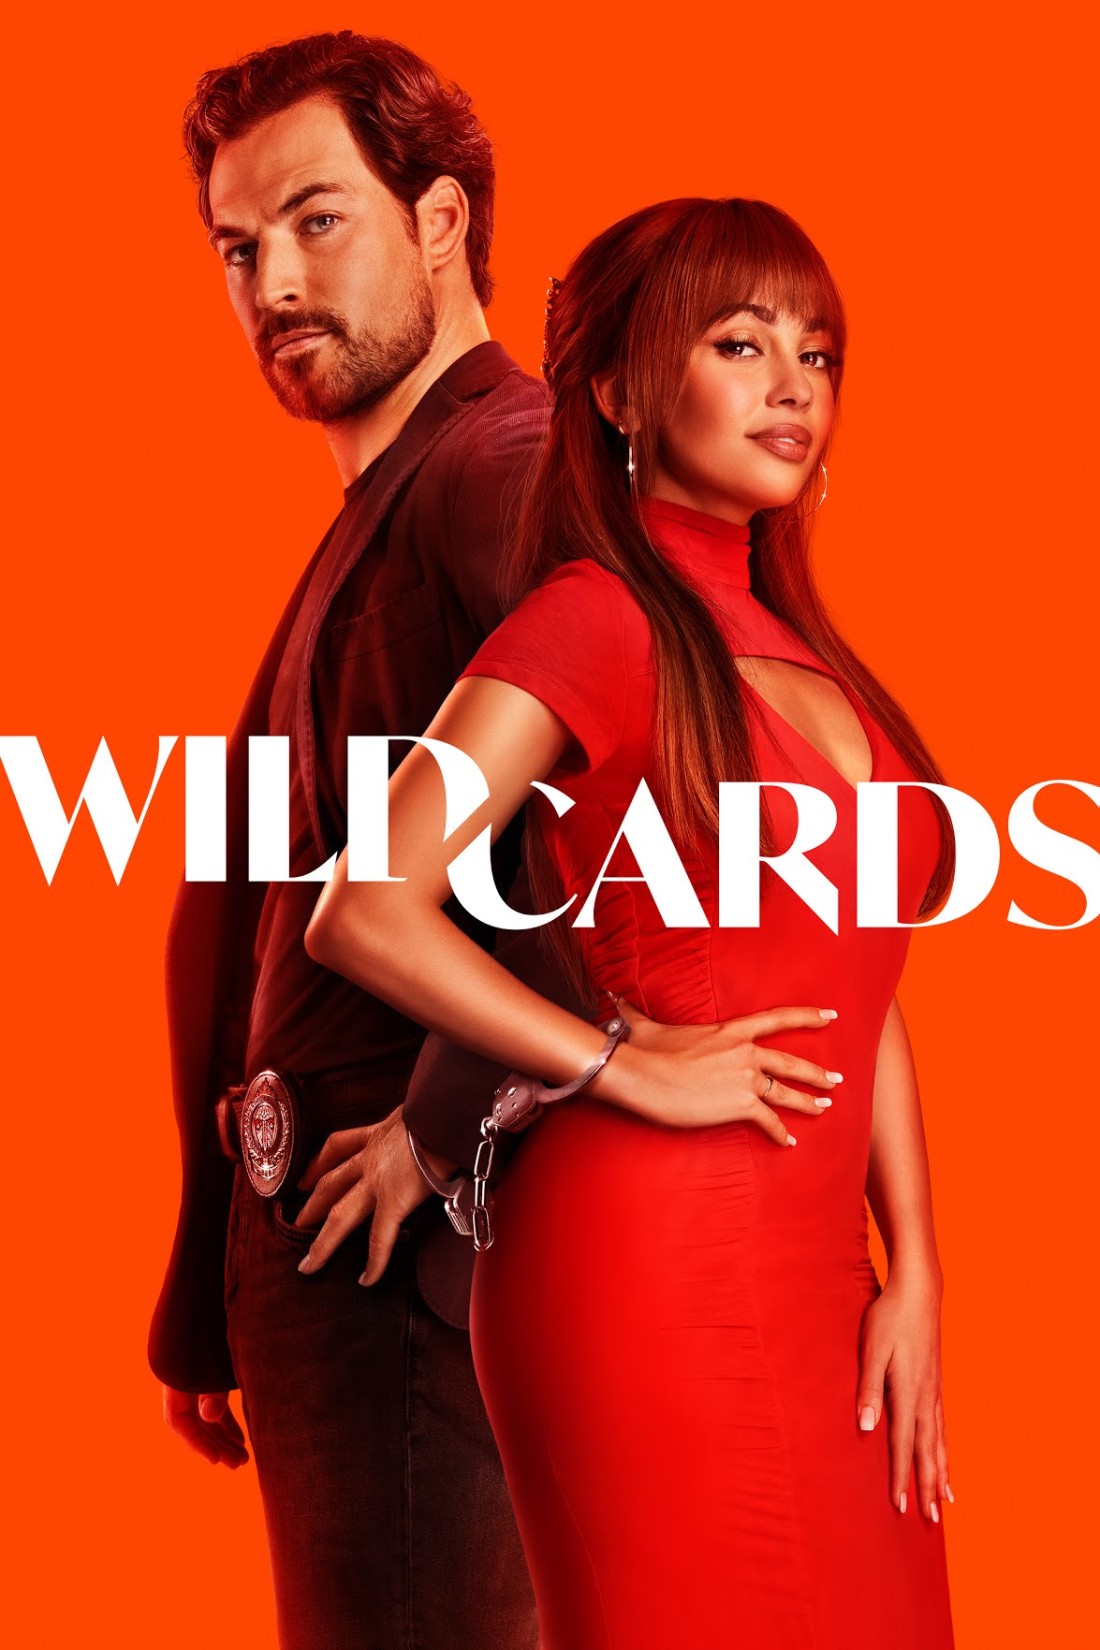 Wild Cards S01E02 [1080p/720p] WEBRip (x264/x265) [6 CH] E998284b1f03d6b434277ee9125c5d04